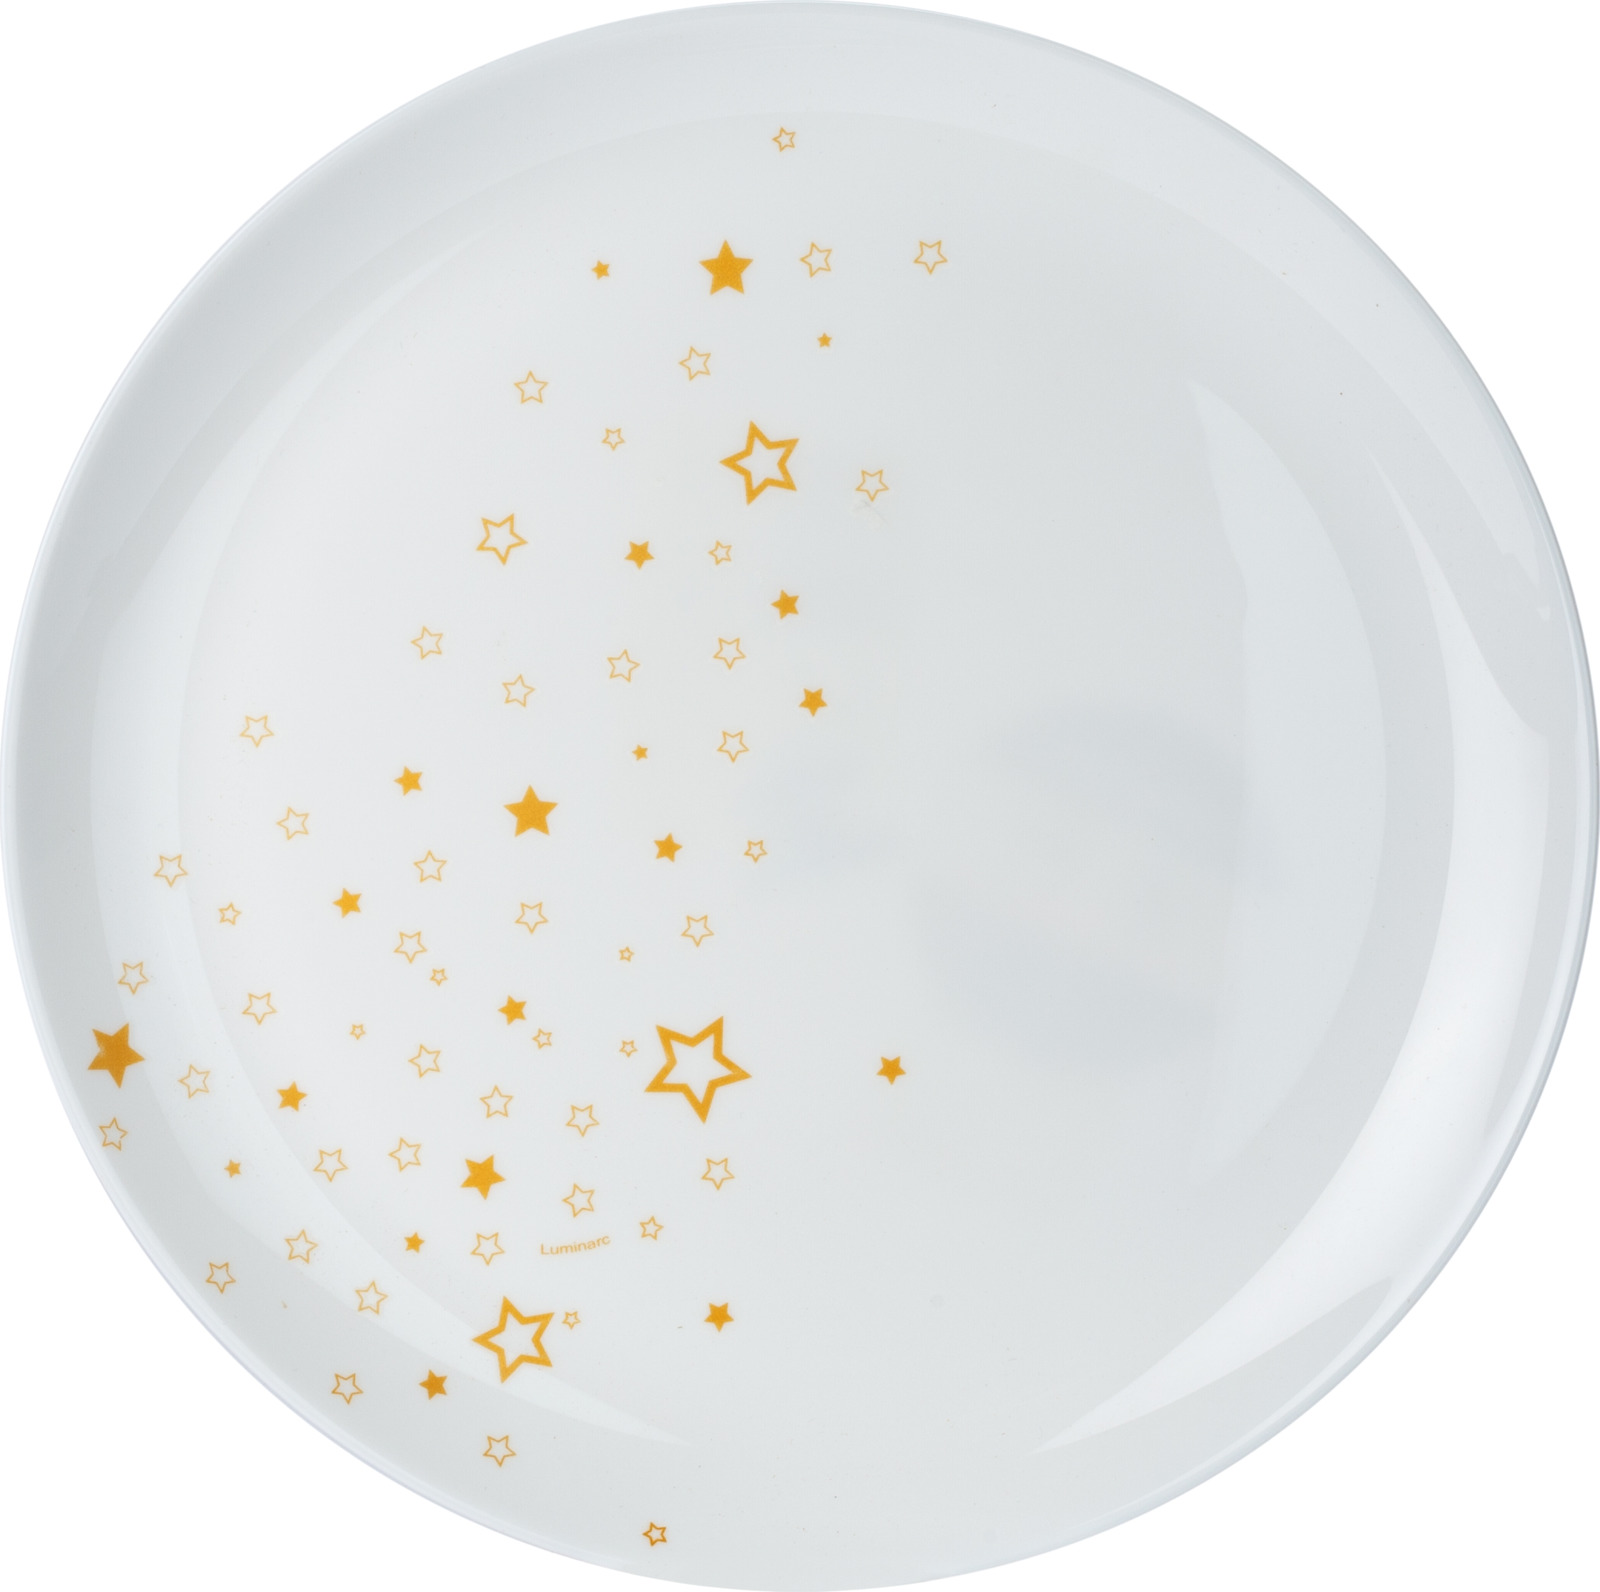 Тарелка Luminarc Старс, P1499, белый, диаметр 27 см